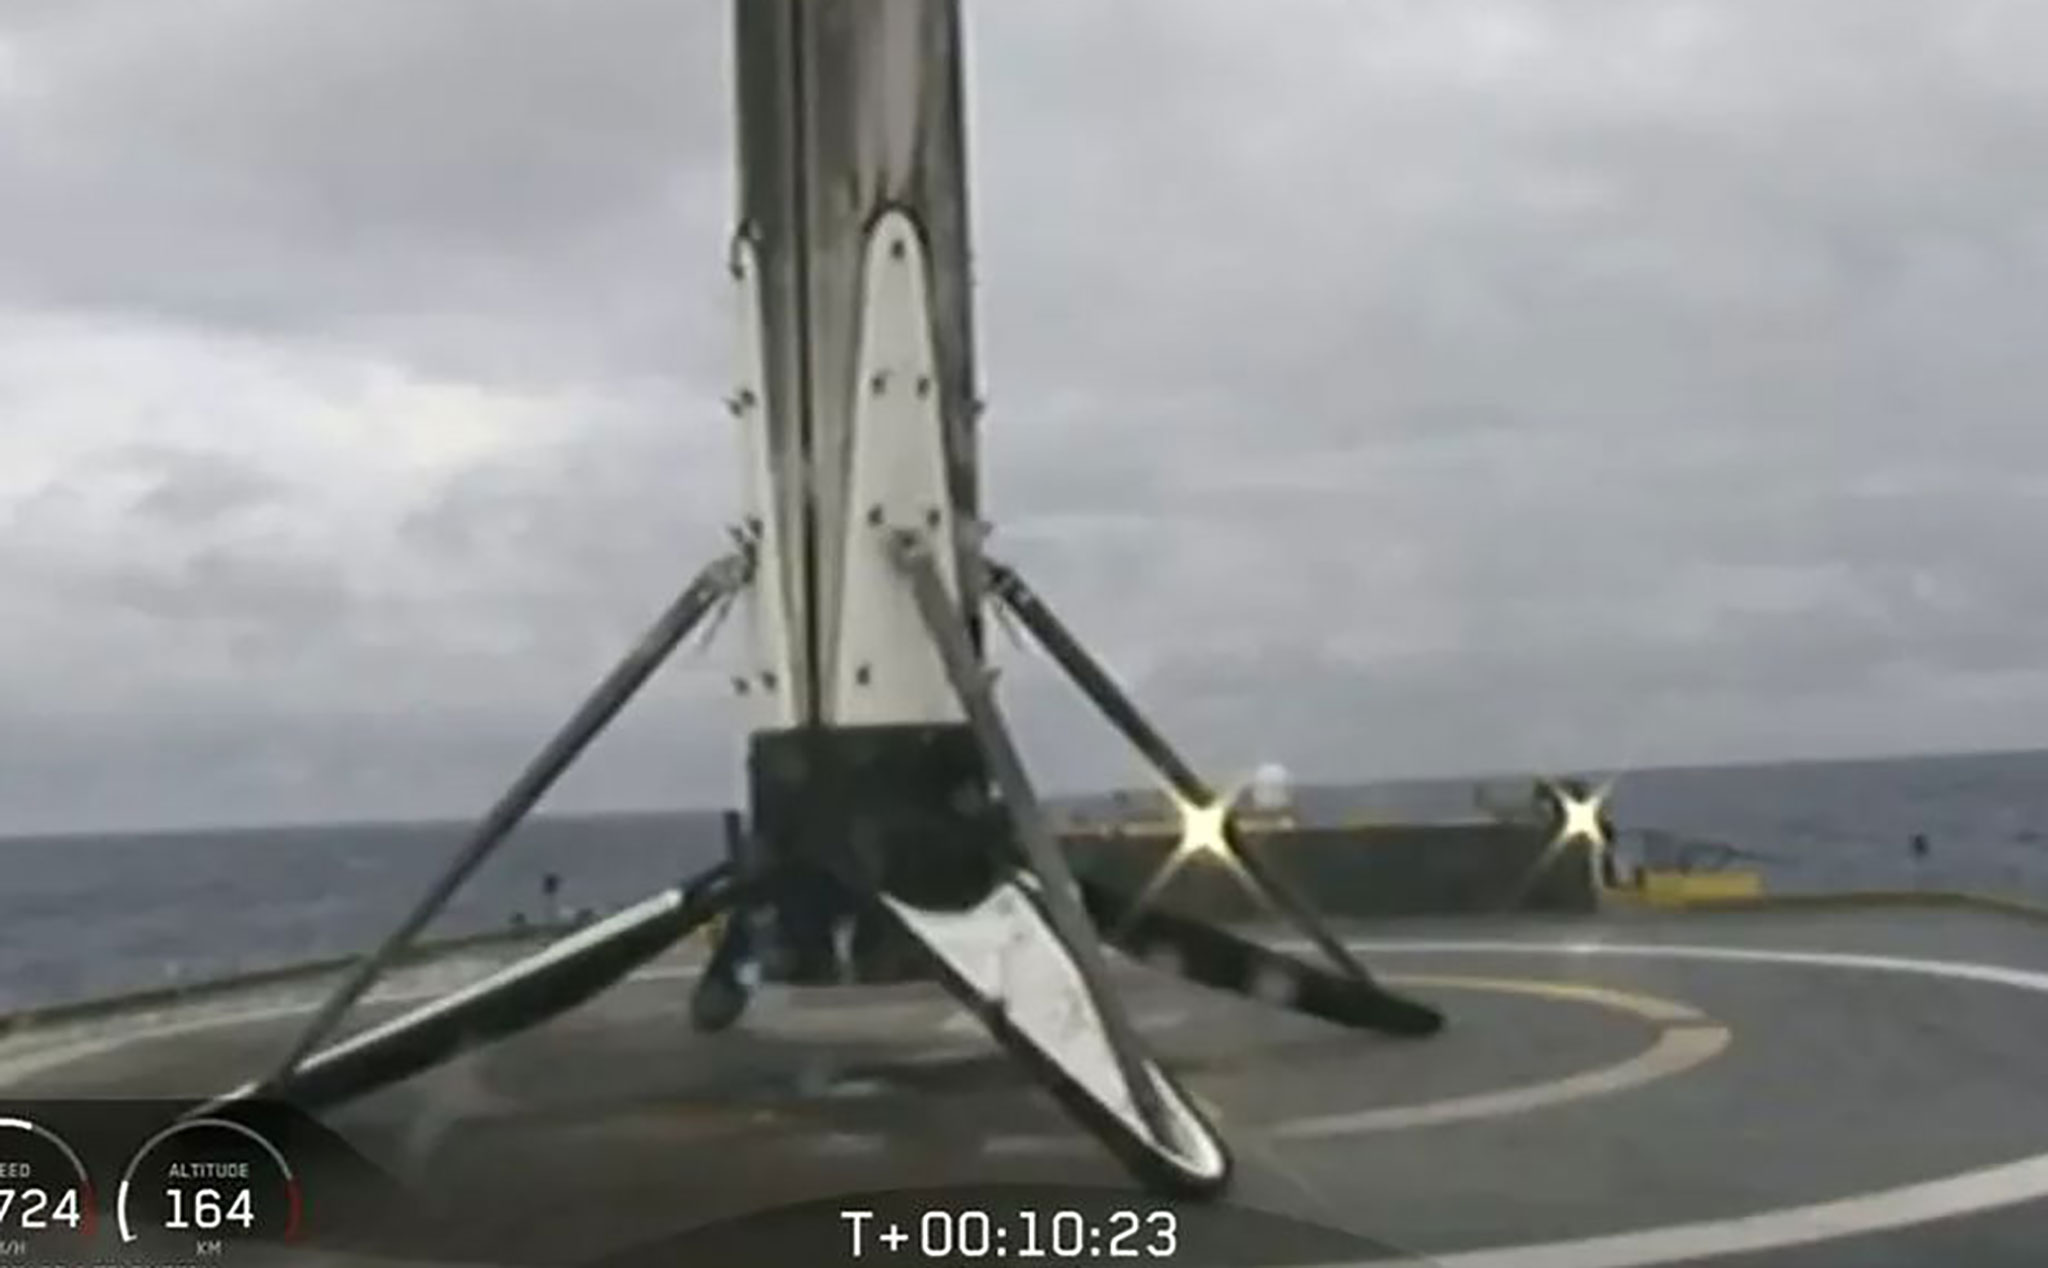 Lõi trung tâm của tên lửa Falcon Heavy rơi xuống biển vì sà lan bị chao đảo do sóng đánh